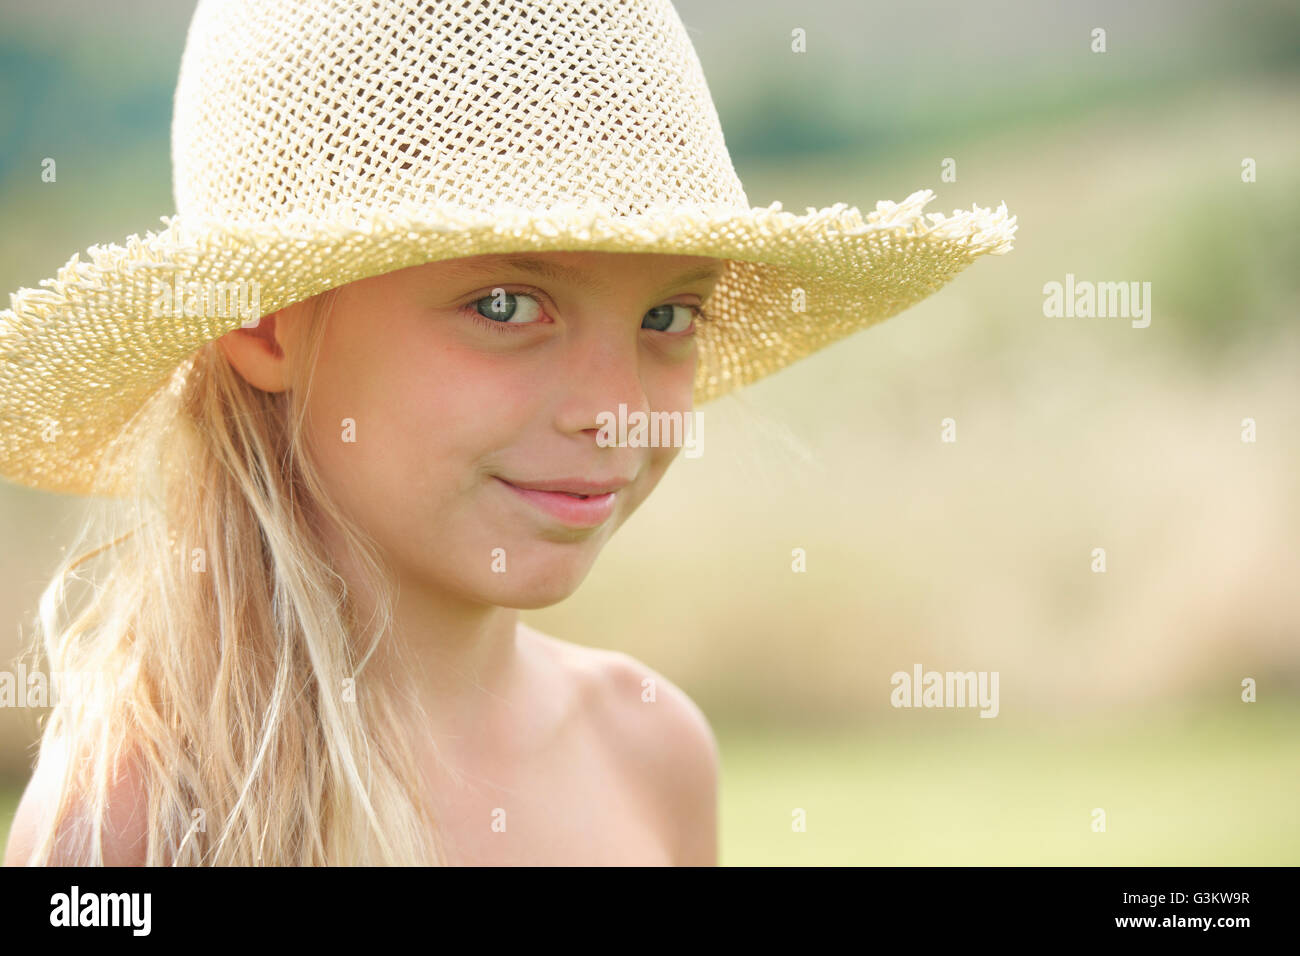 Retrato de joven al aire libre, vestido con sombrero de paja Foto de stock